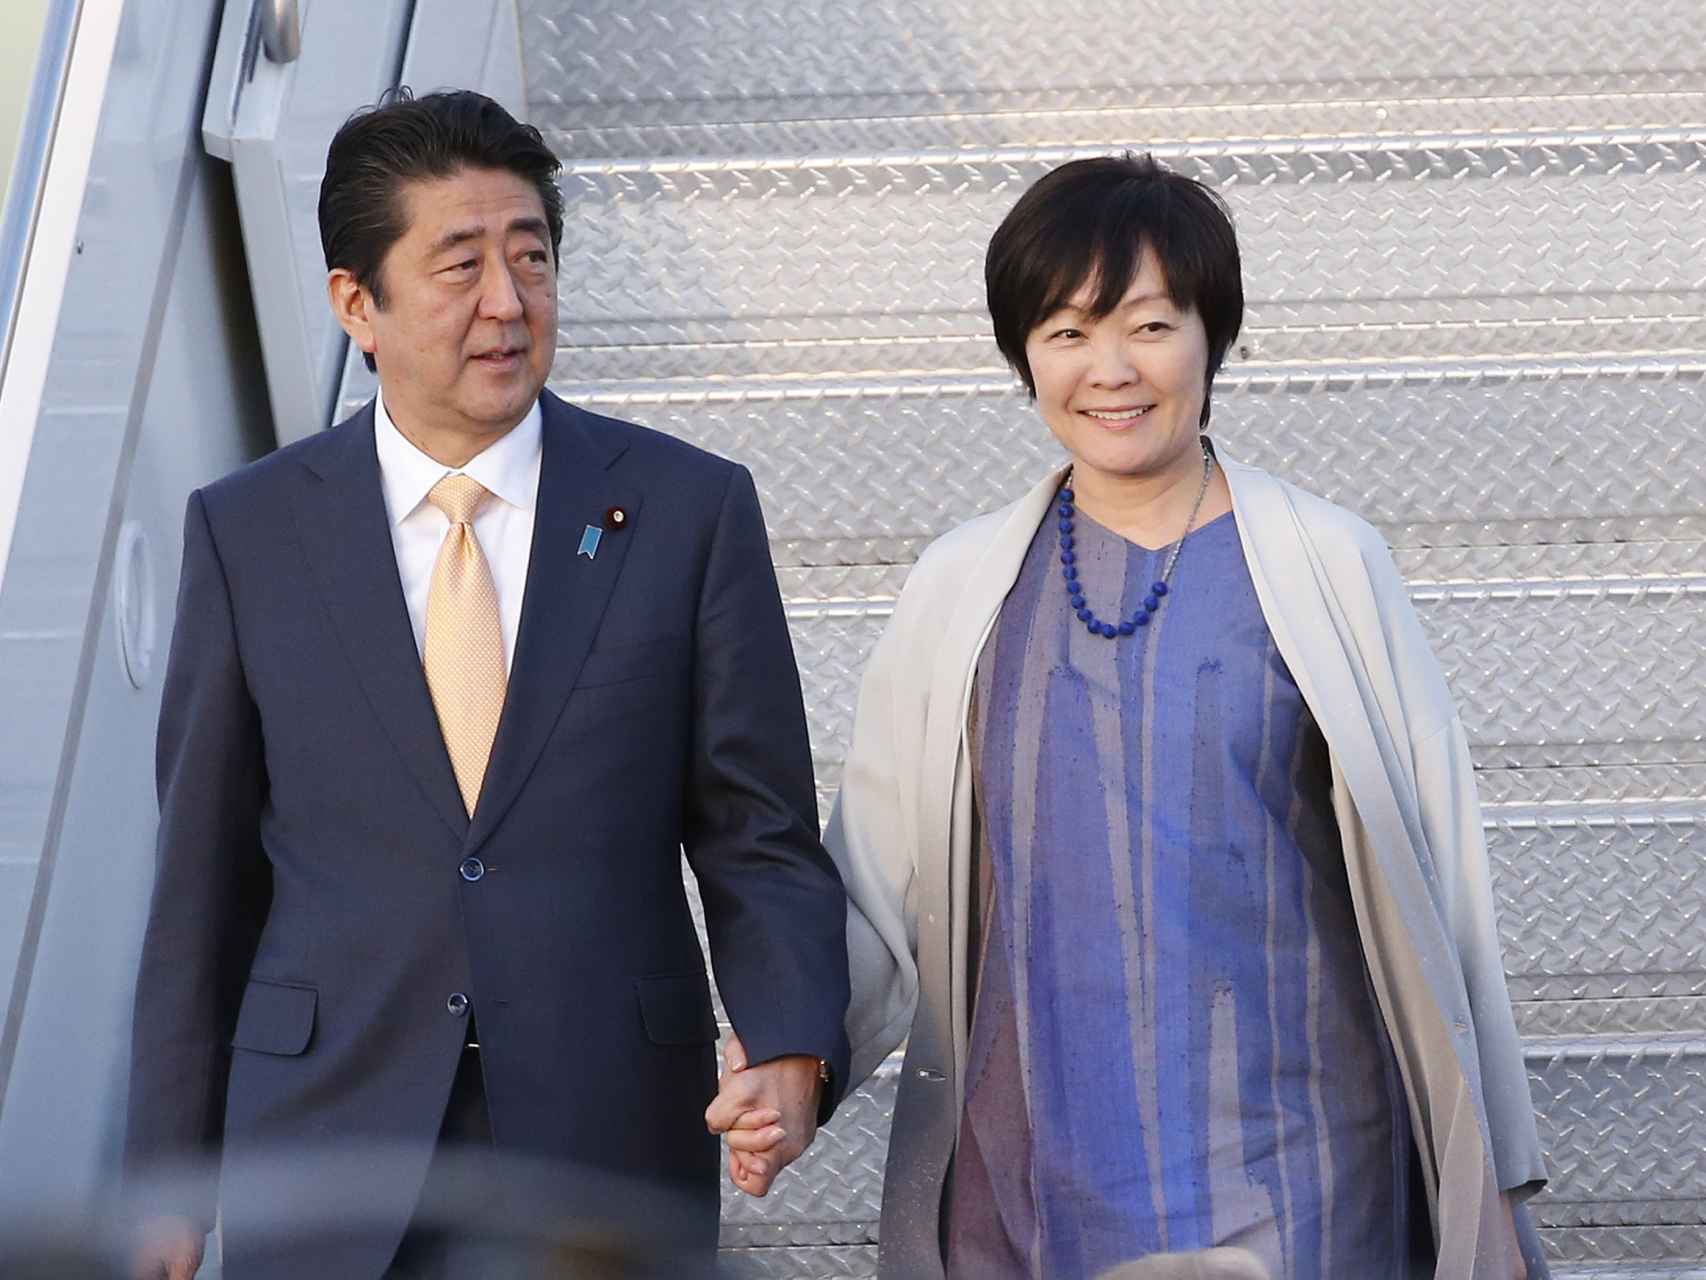 Shinzo y Akie Abe se mostraban inseparables en los actos públicos, con gestos de cariño que nunca se habían visto en líderes japoneses.